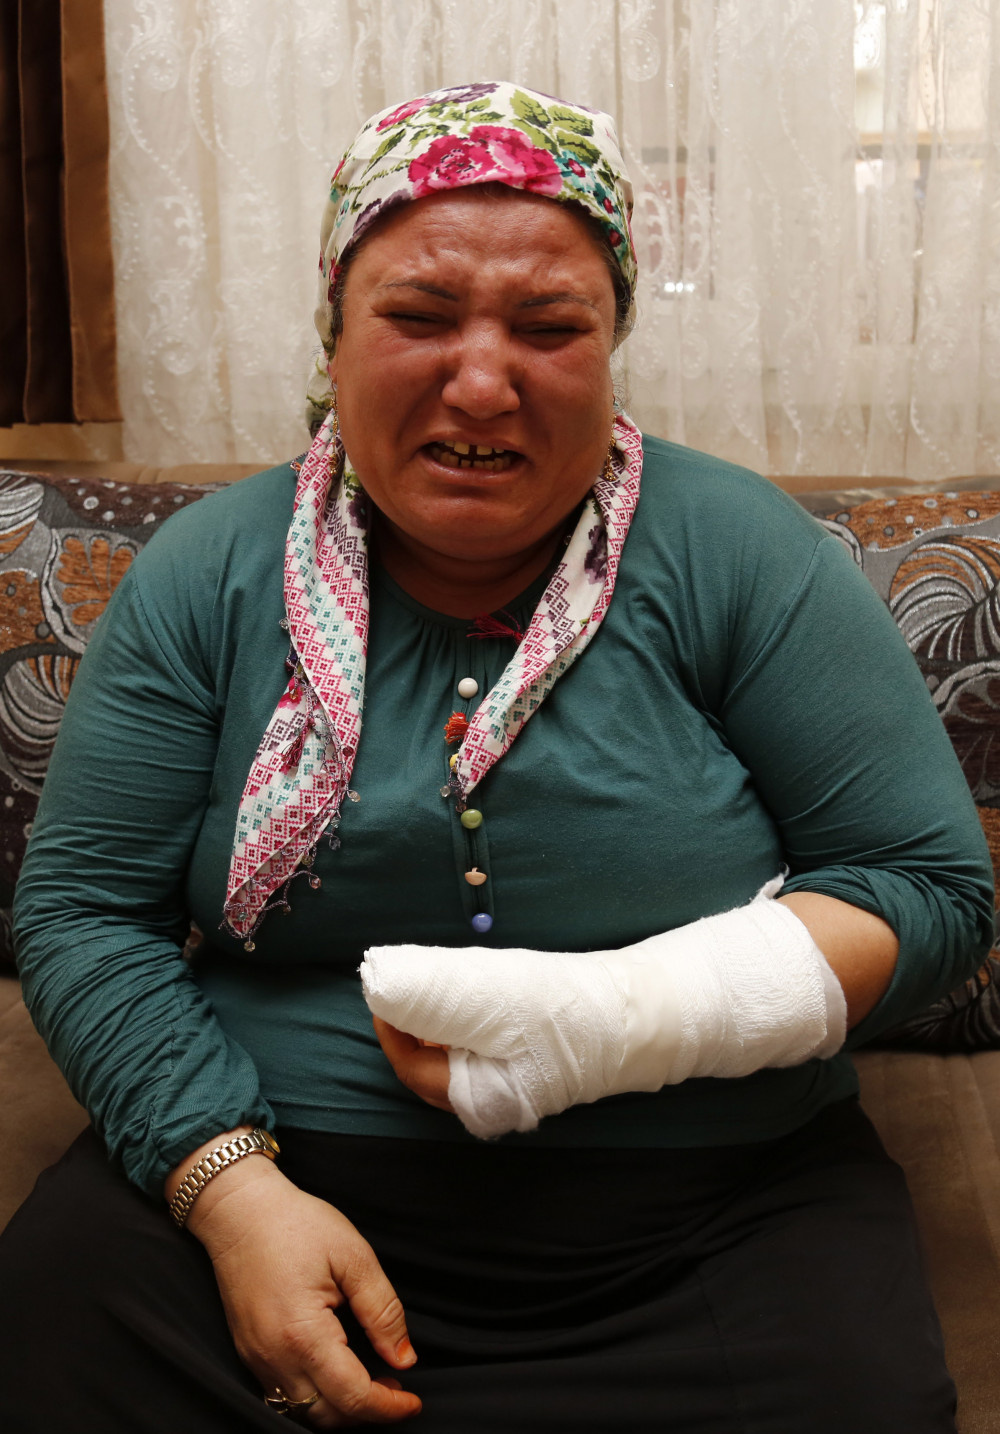 Korna sesini duymayan engelli kadının kolunu kırdılar